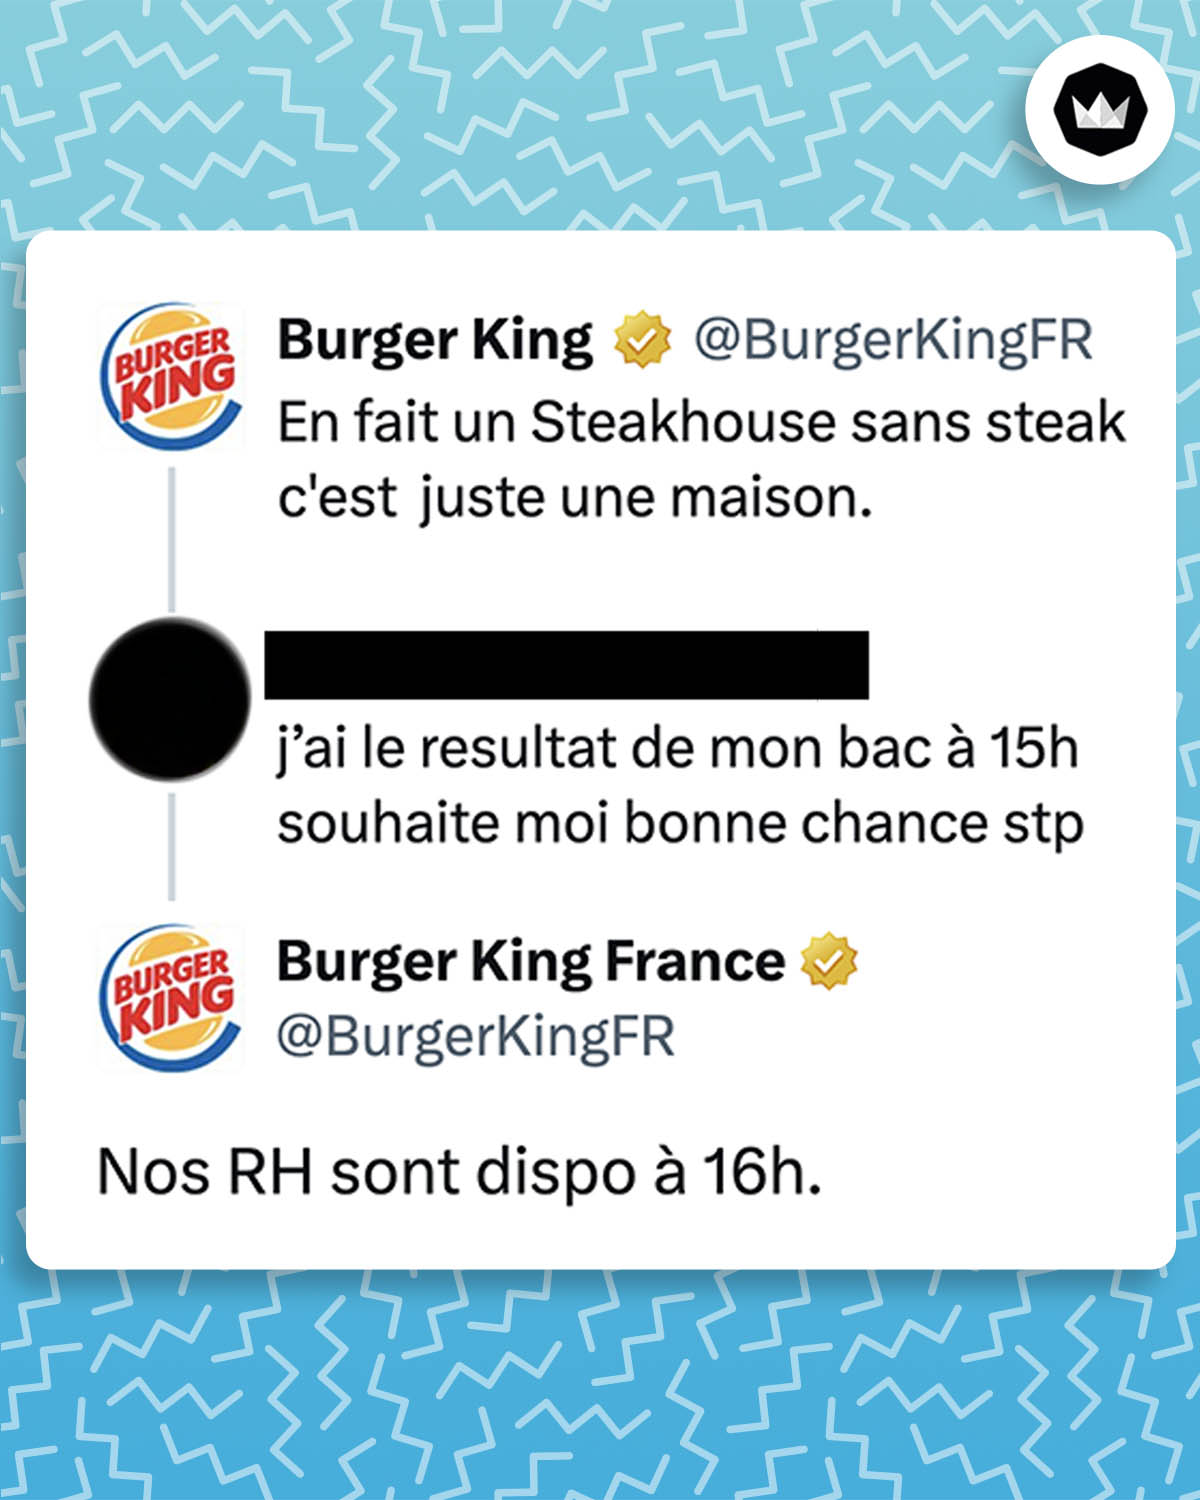 BurgerKingFR : 
En fait un Steakhouse sans steak c'est juste une maison. 
Internaute : jai le resultat de mon bac à 15h souhaite moi bonne chance stp
BurgerKingFR : 
Nos RH sont dispo à 16h.